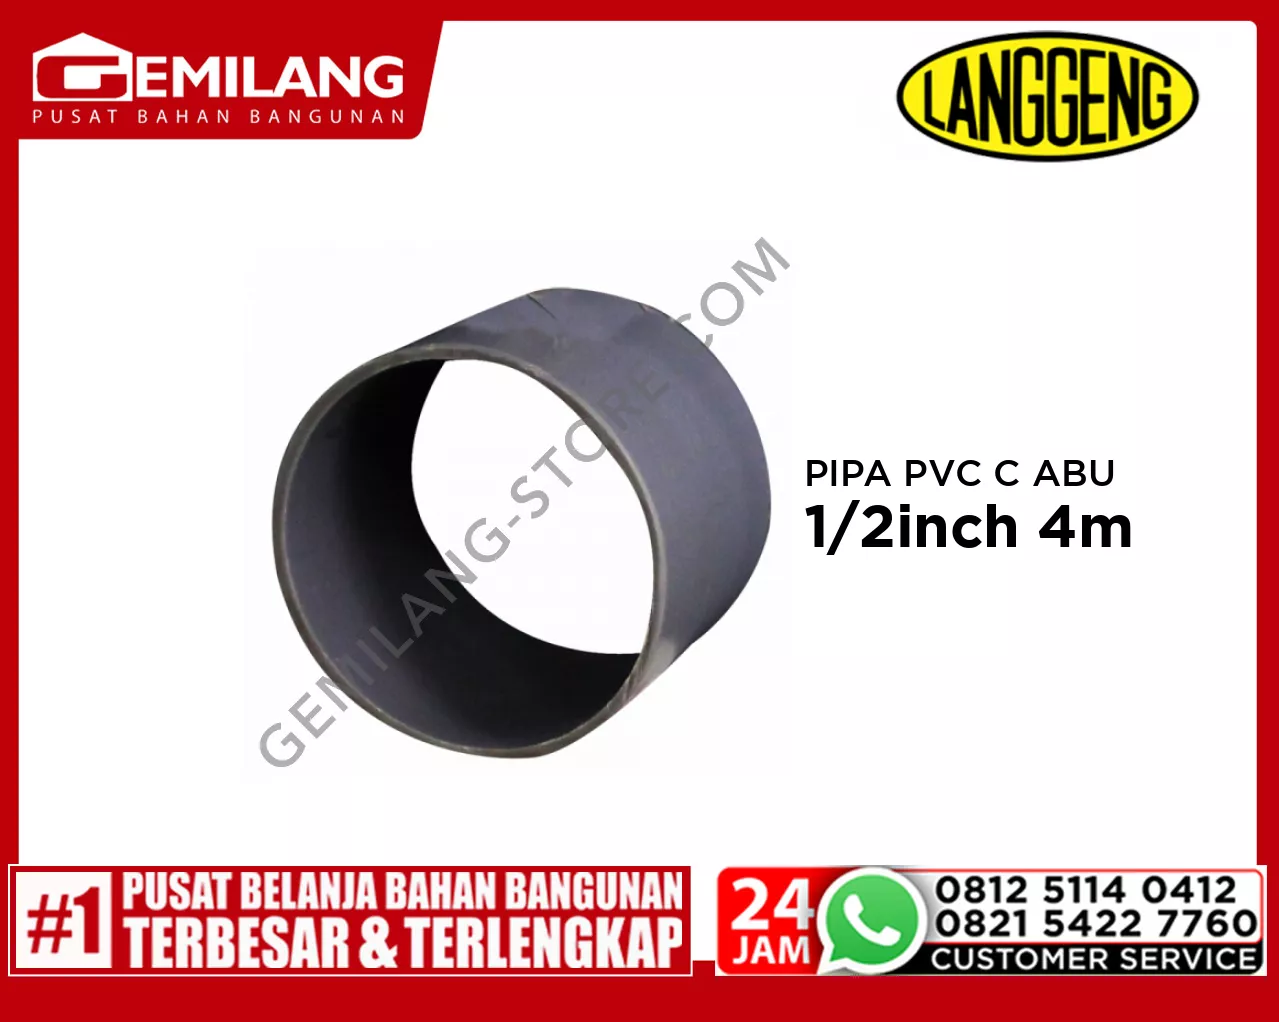 LANGGENG PIPA PVC C ABU-ABU 1 1/2inch 4m